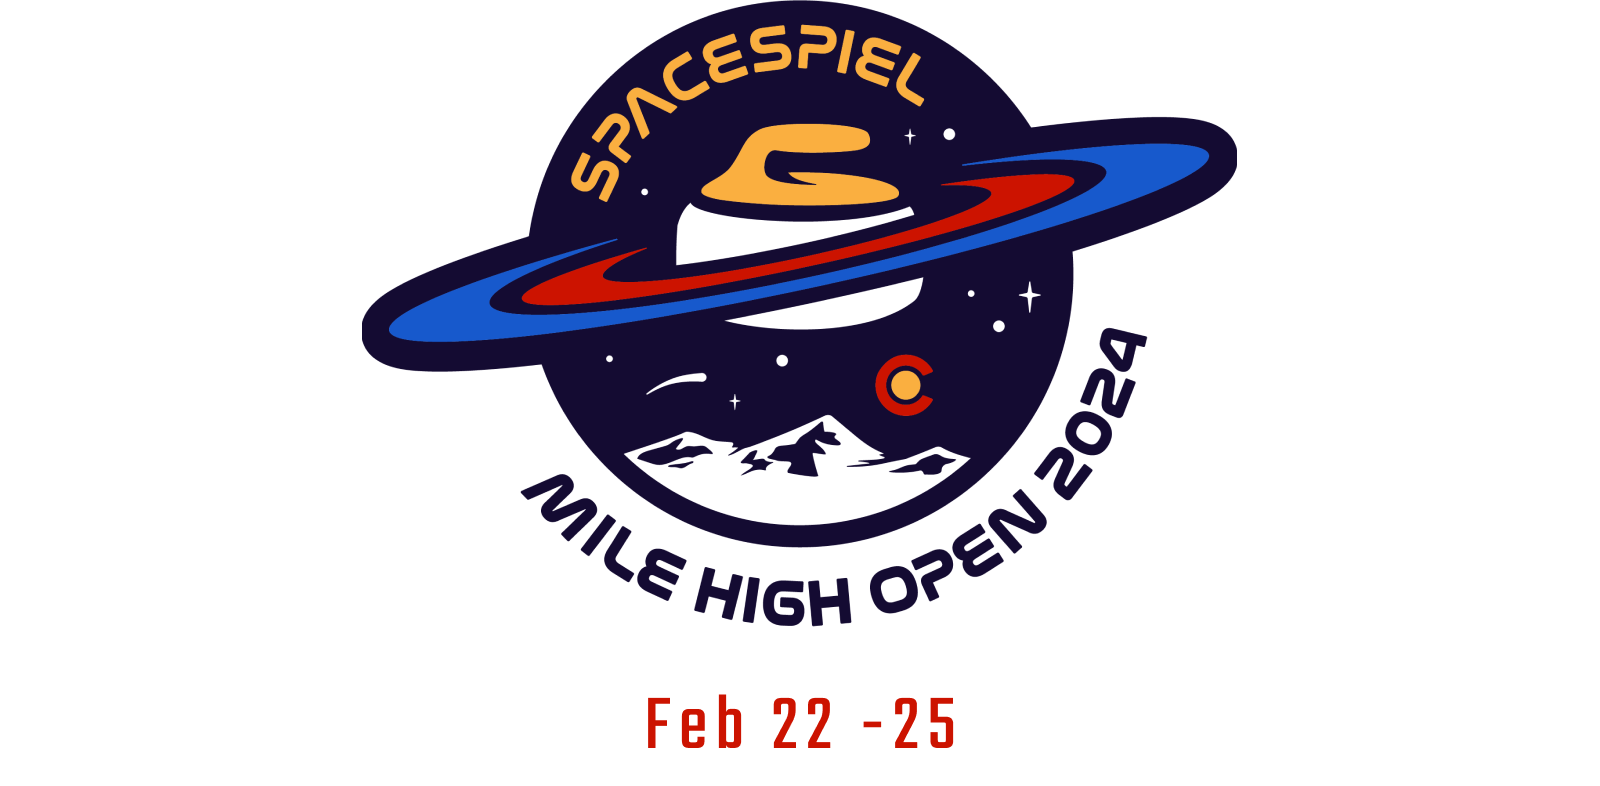 MHO logo, Feb 22 - 25